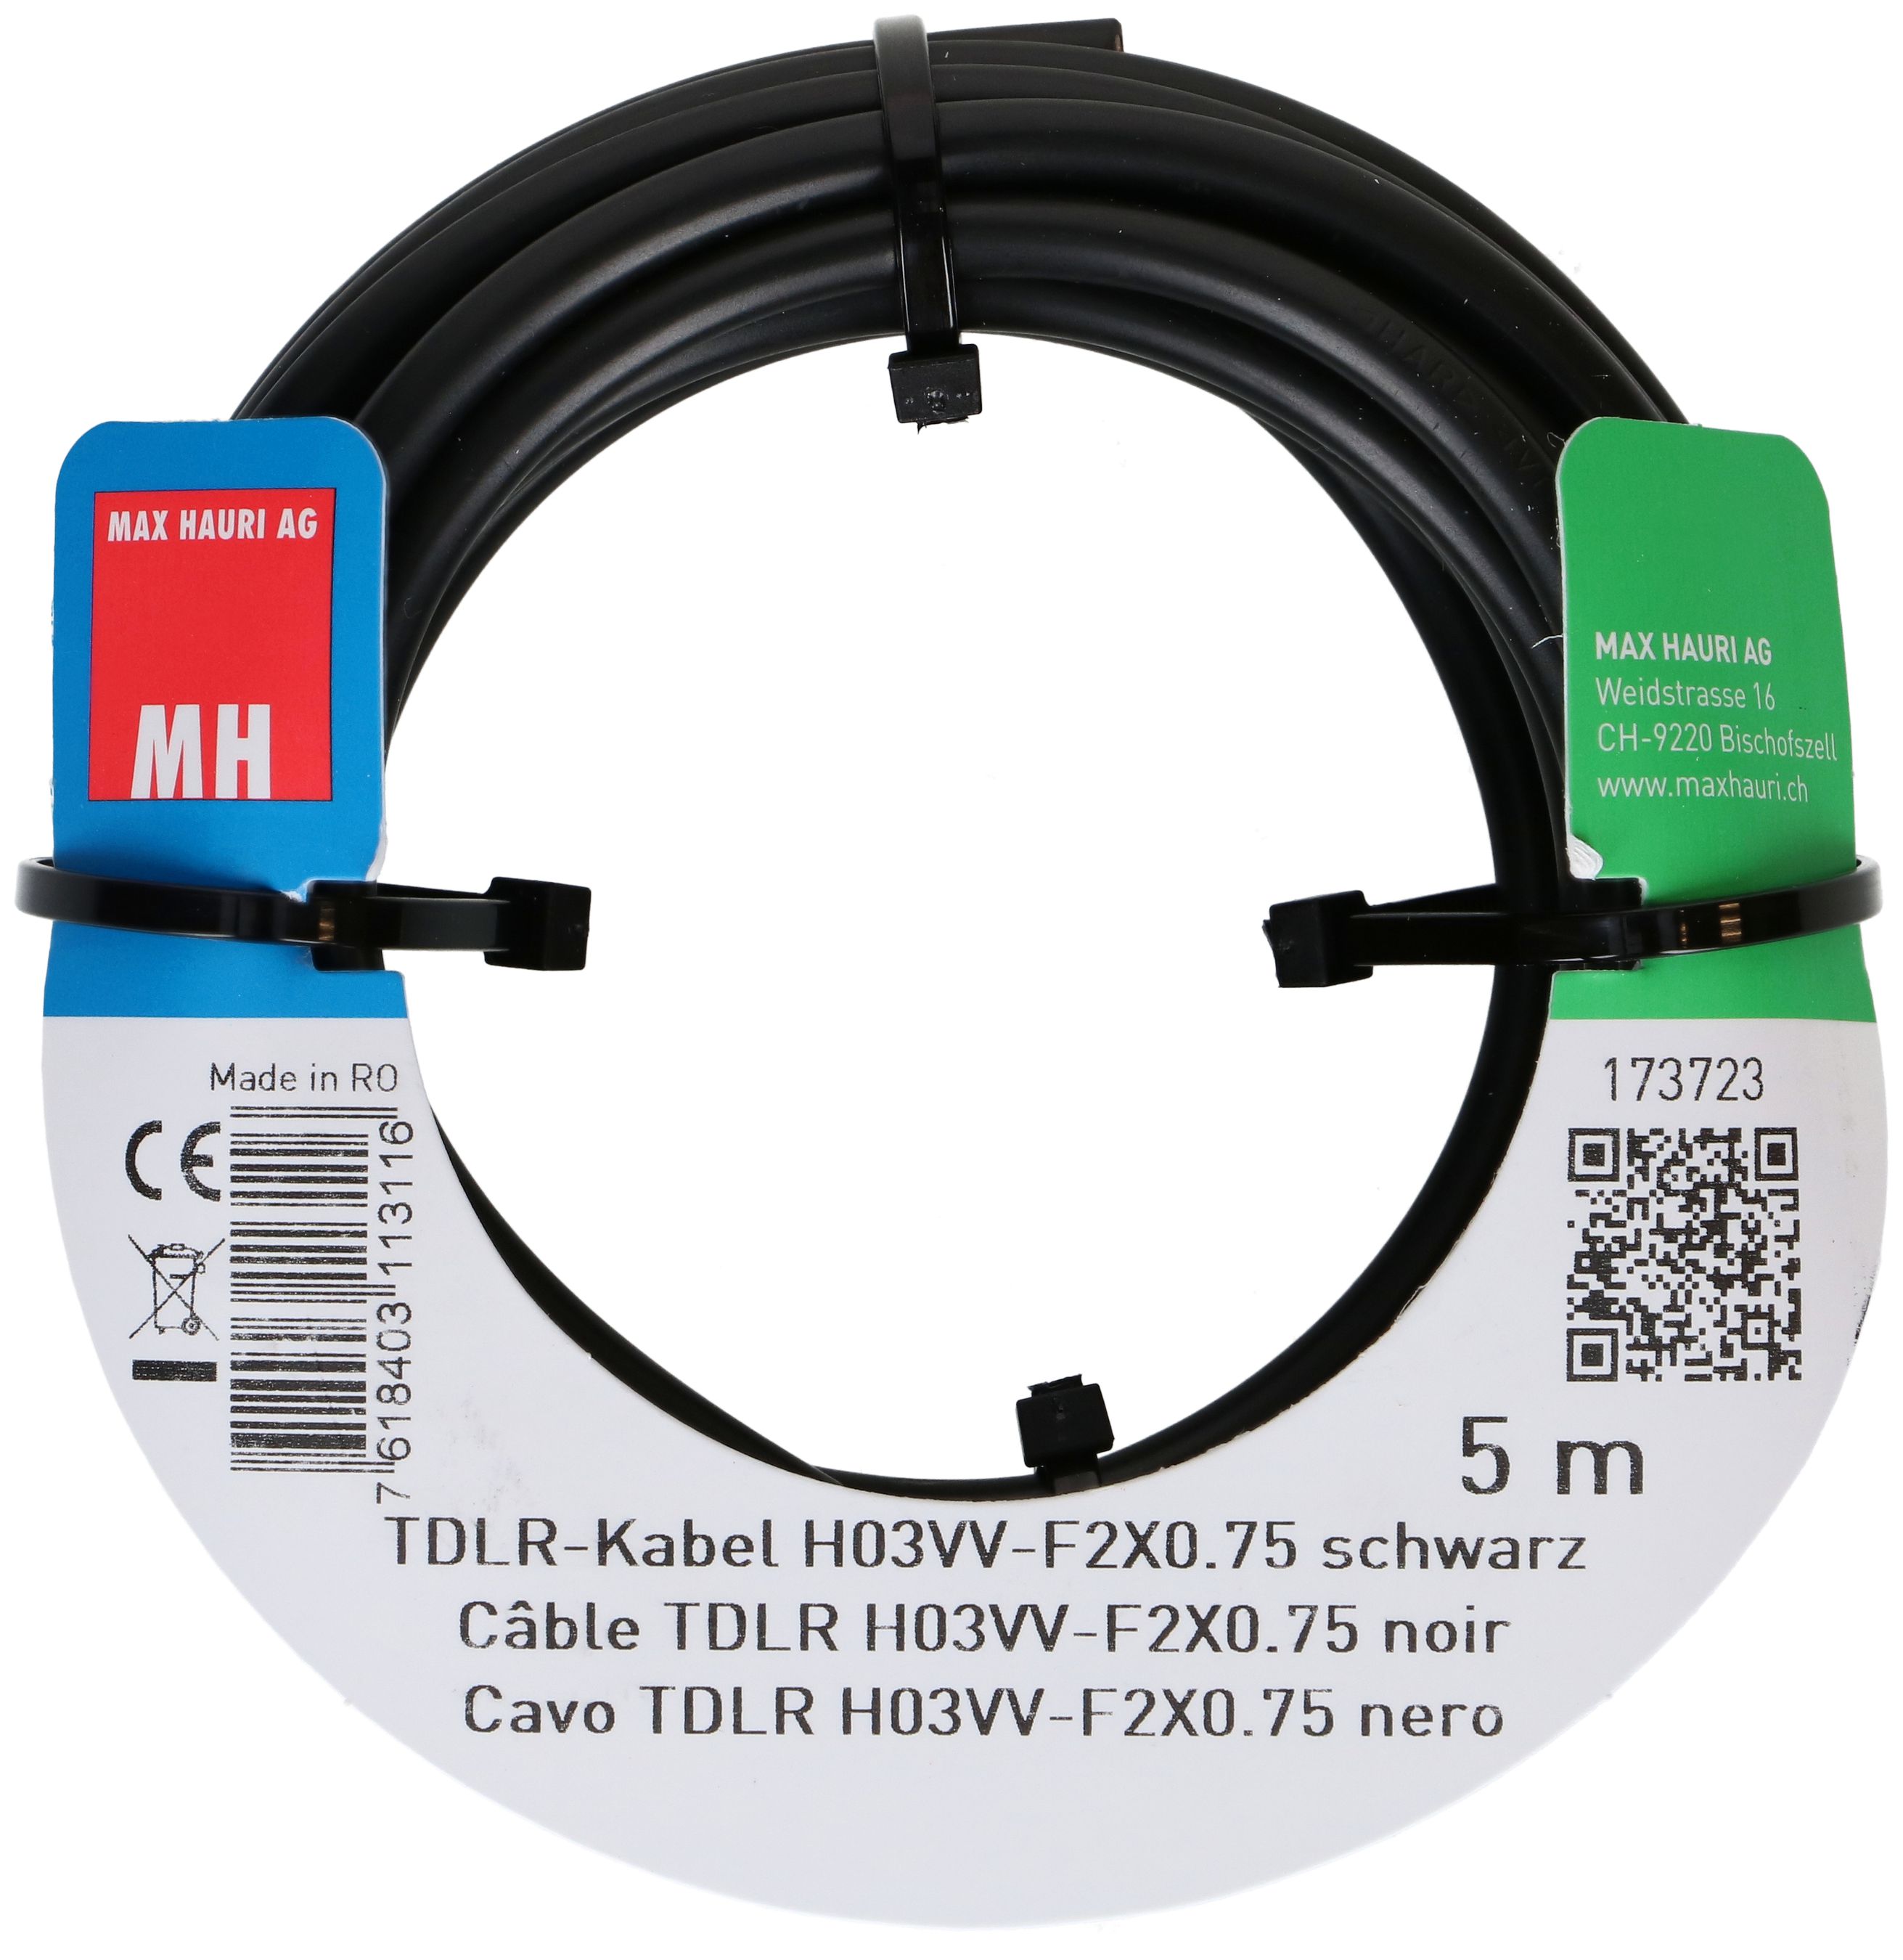 TDLR-Kabel H03VV-F2X0.75 5m schwarz